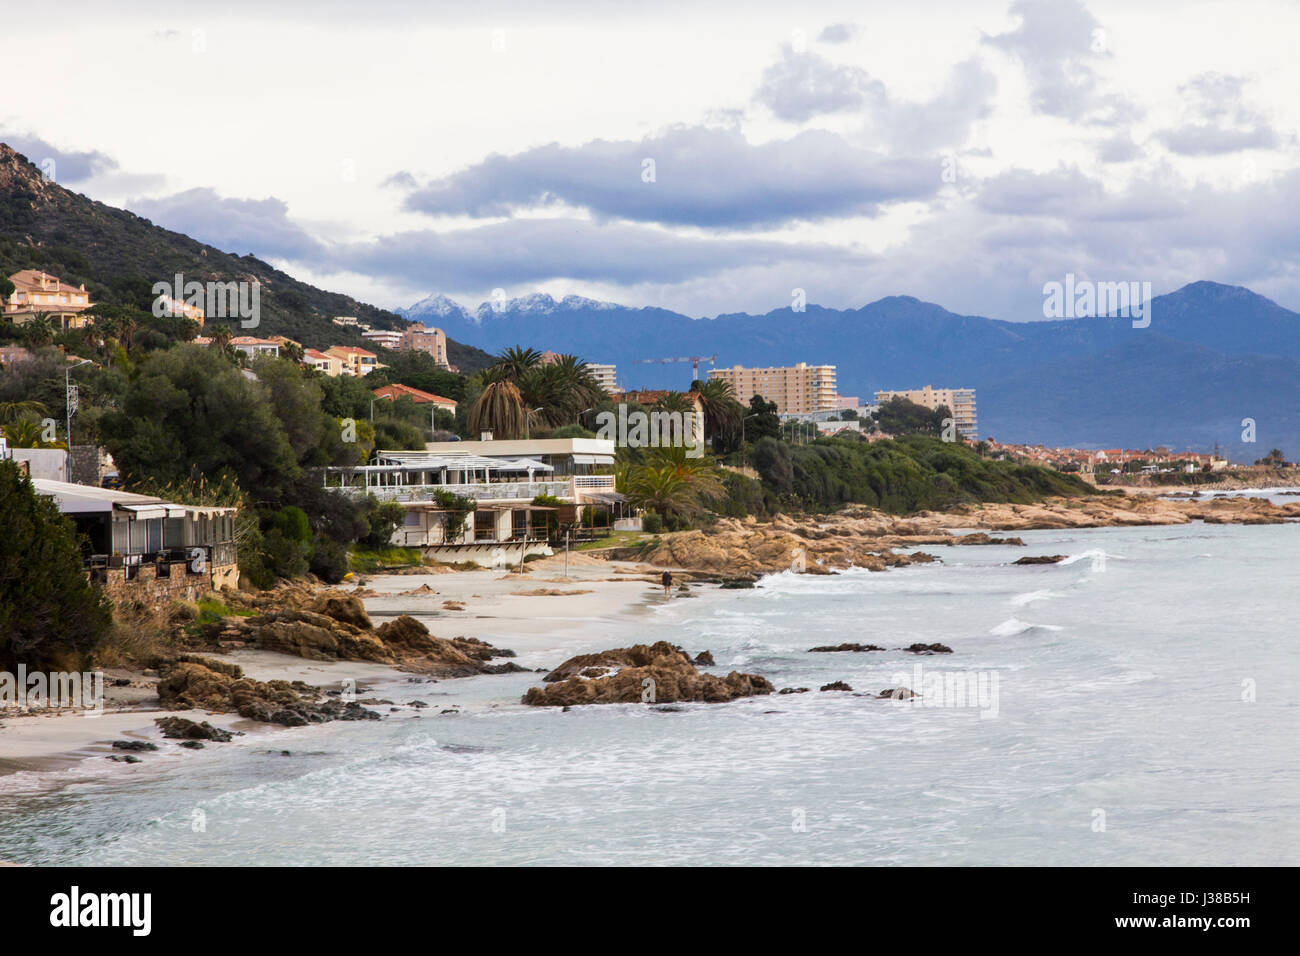 Hoteles de playa y condominios línea Route des Sanguinaires suroeste de Ajaccio, Córcega. Foto de stock